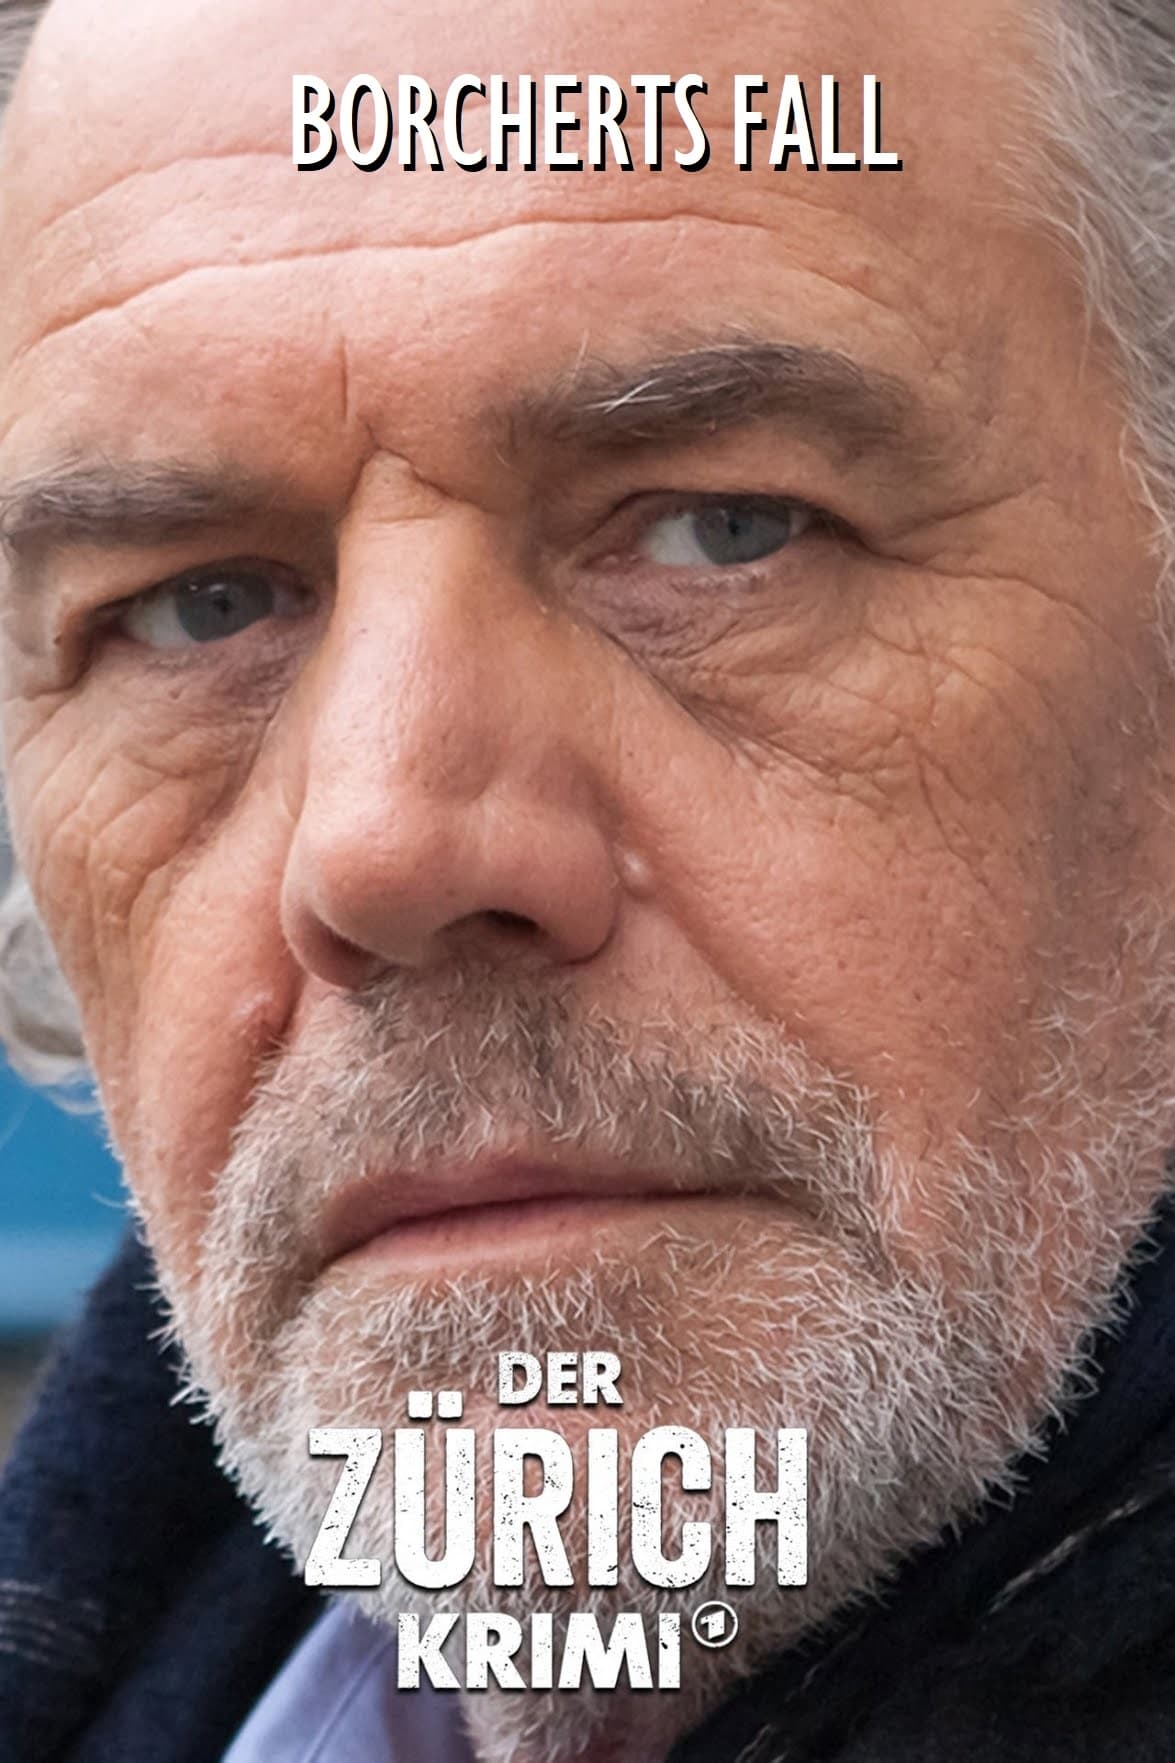 Money. Murder. Zurich.: Borchert's case